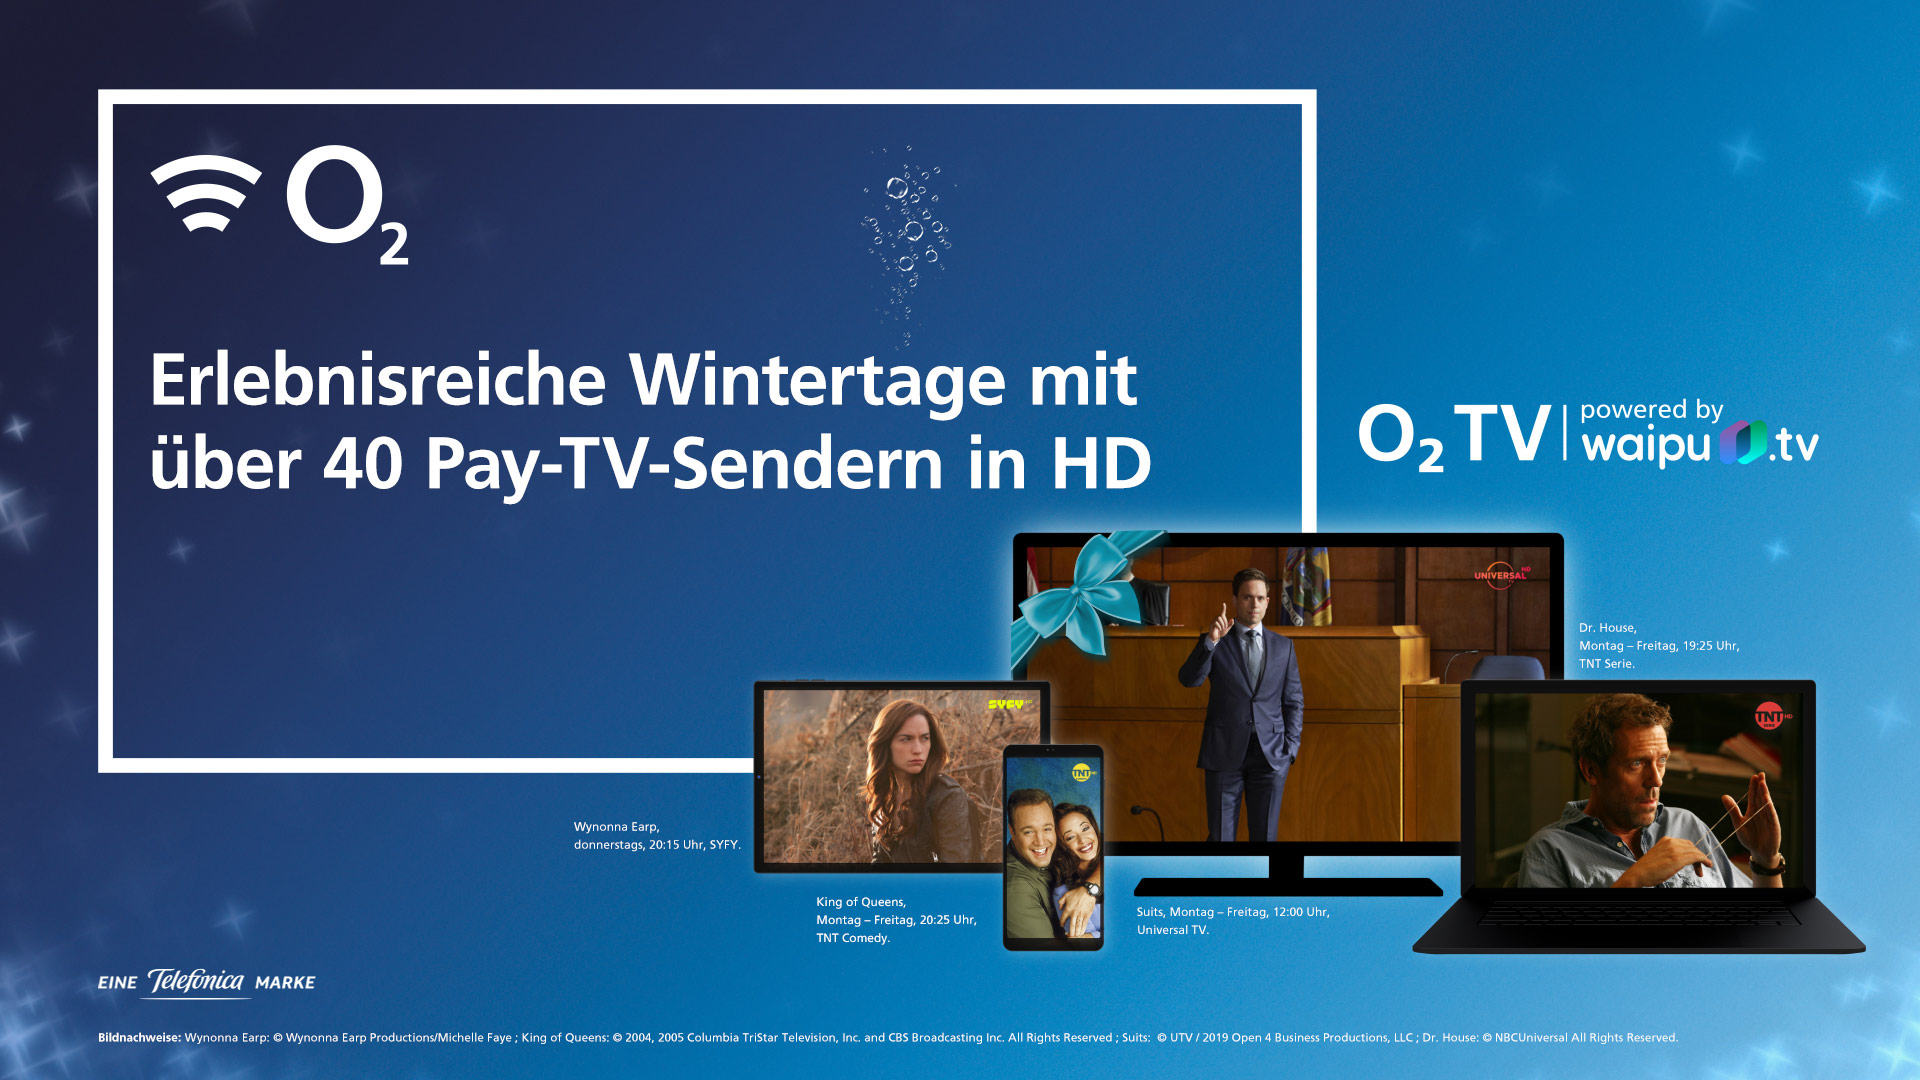 O2 TV: 3 Monate gratis O2 TV auf allen Android TV-fähigen Fernsehern und Boxen